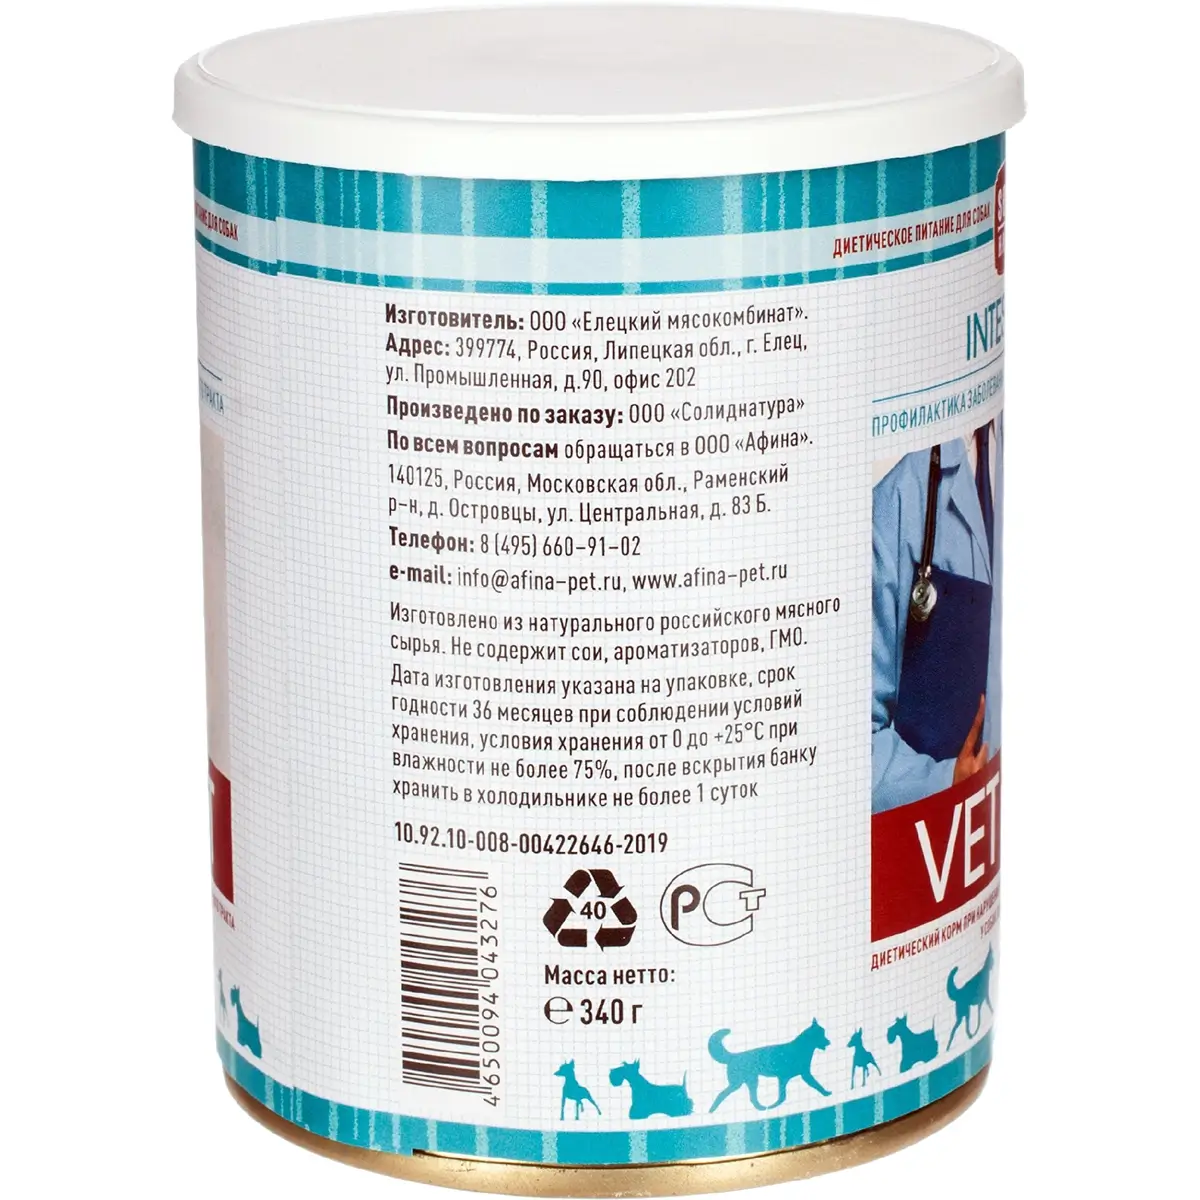 Диетические консервы Solid Natura Vet Intestinal для собак (Для профилактики заболеваний ЖКТ, жестяная банка, 340г)